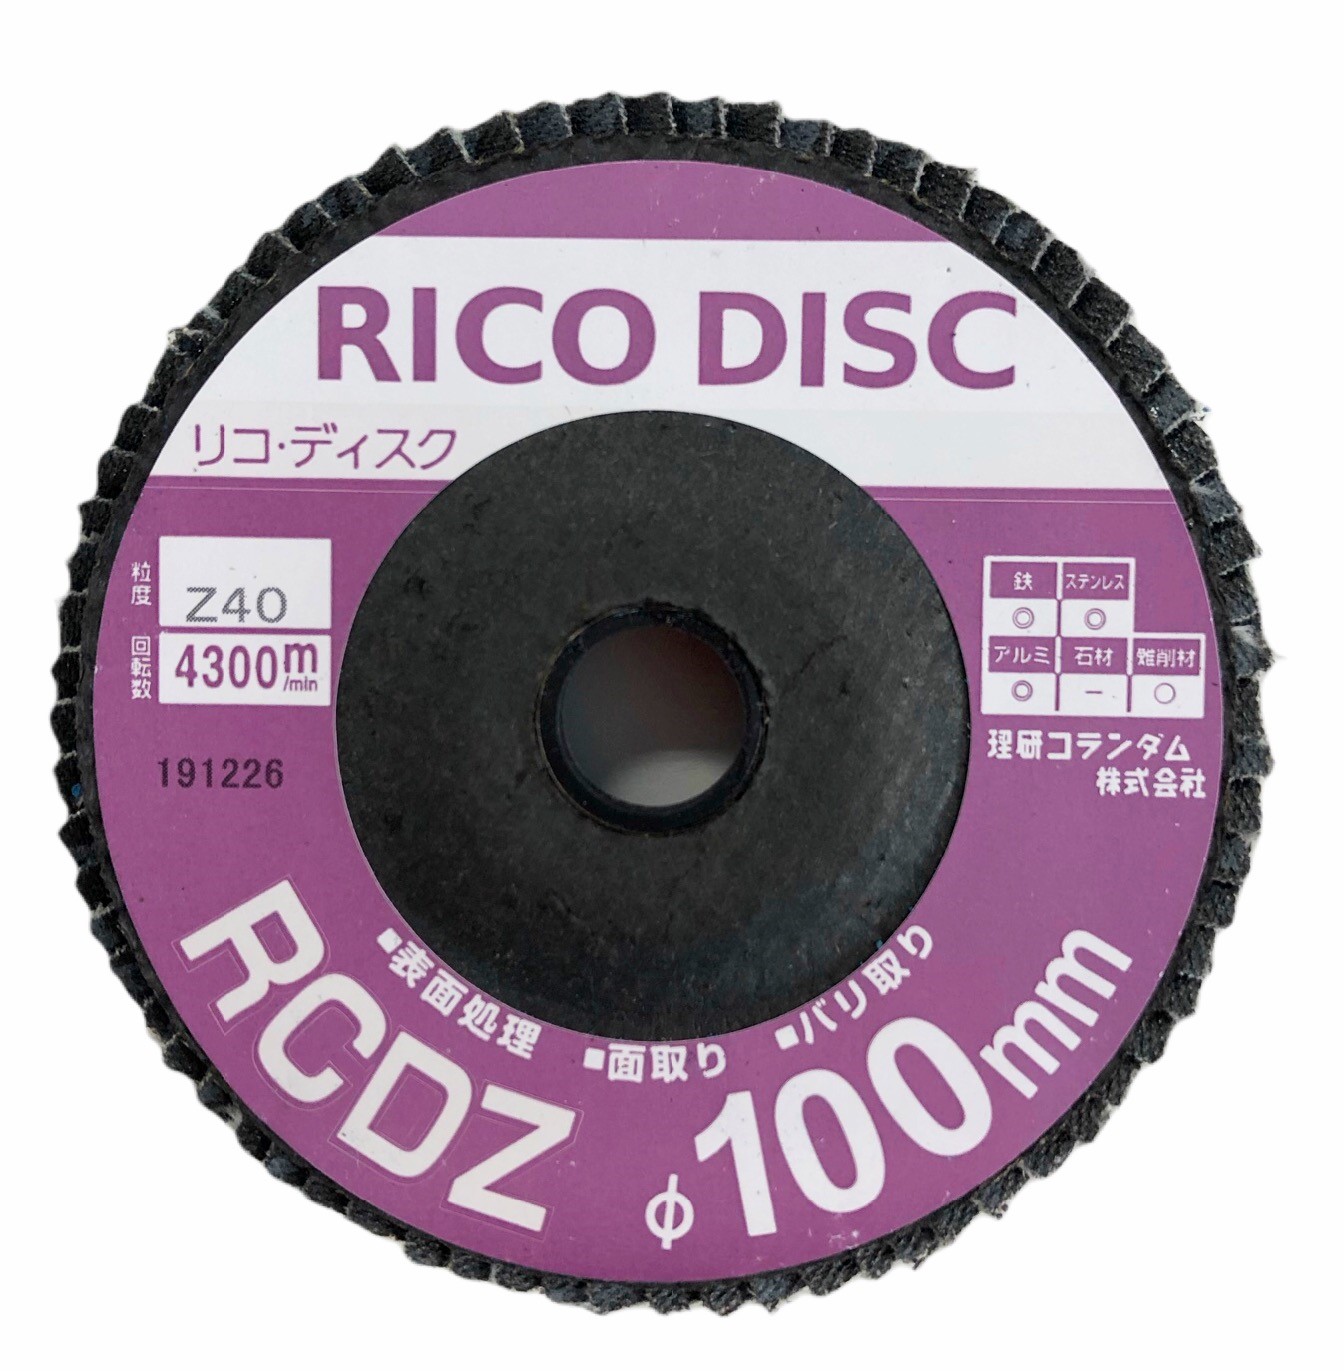 【RCDZ】リコディスク